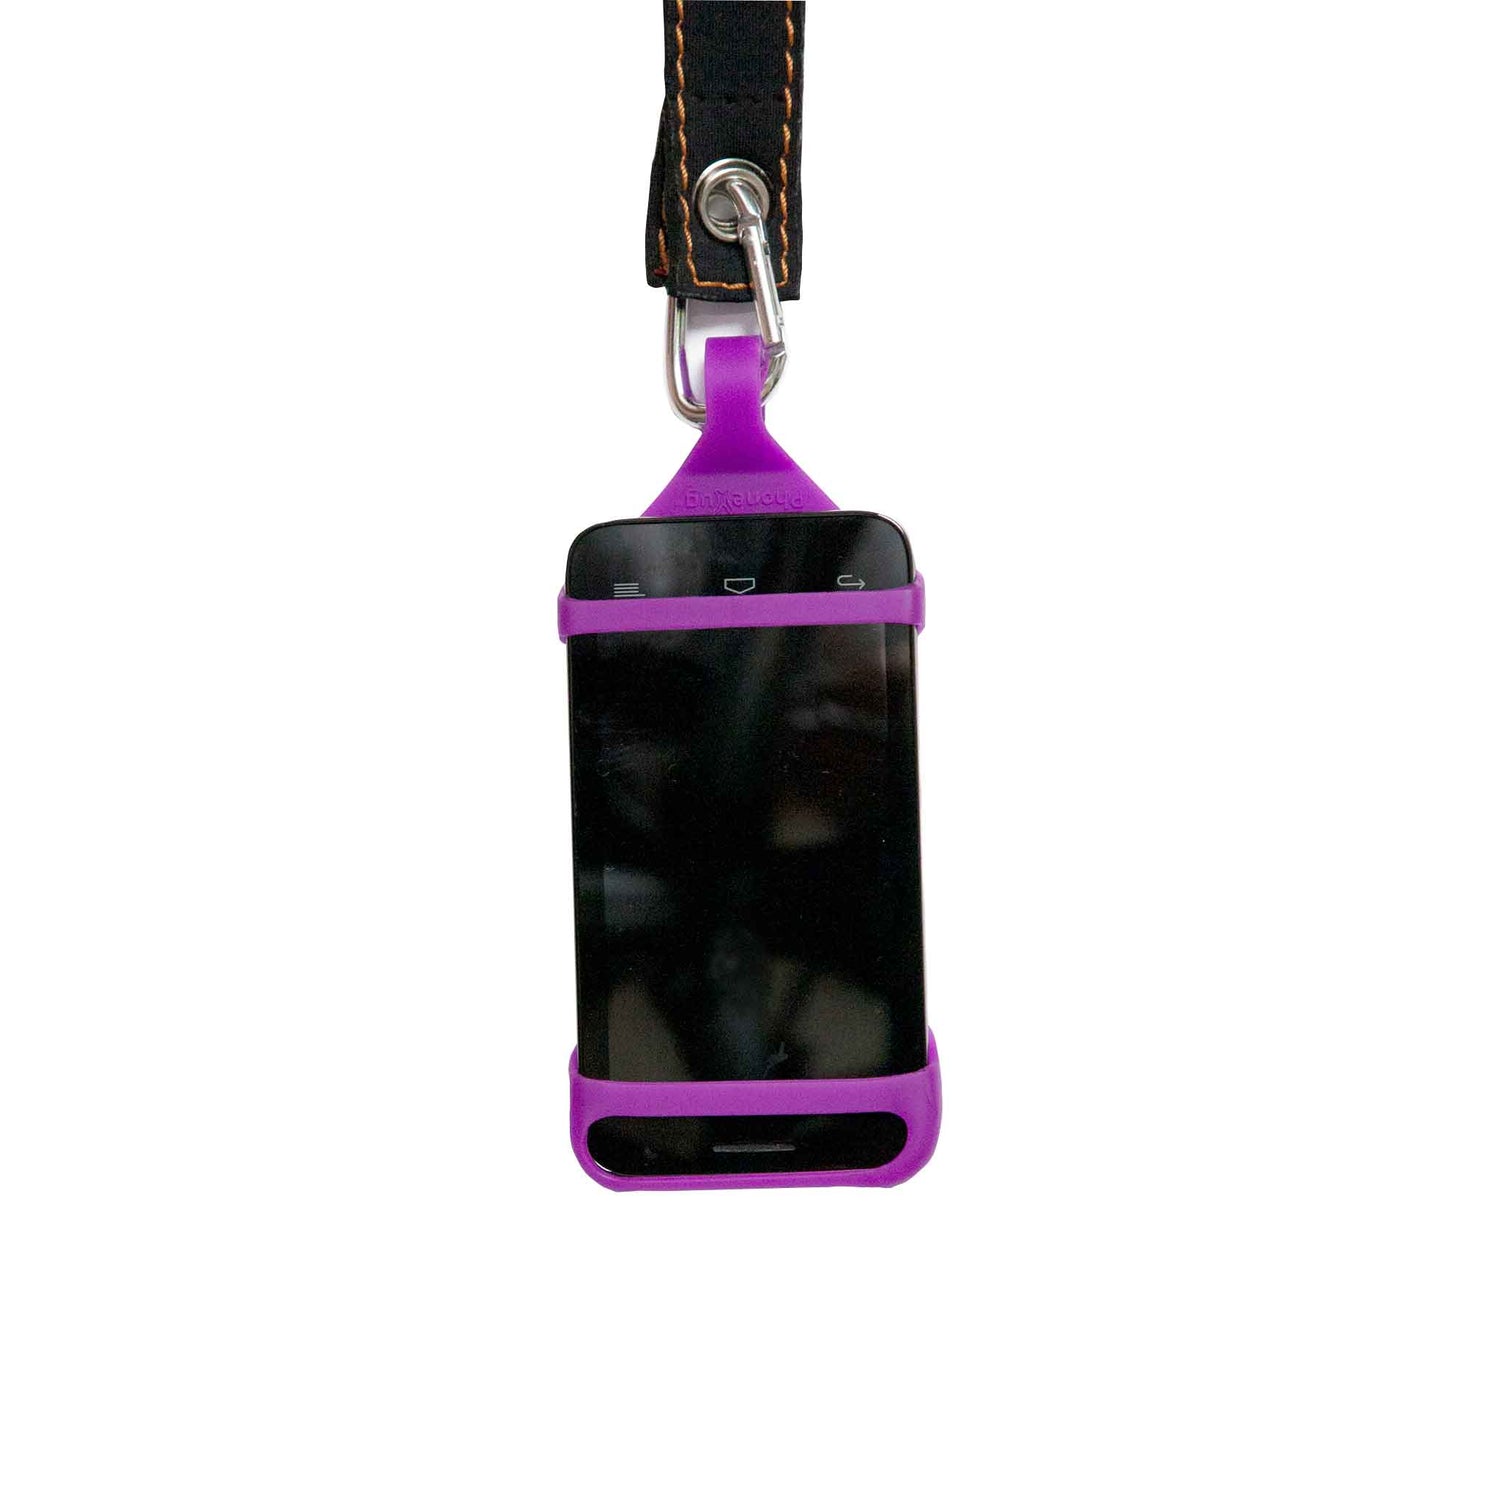 A PhoneHug | Purple | Phone harness - PhoneHug®